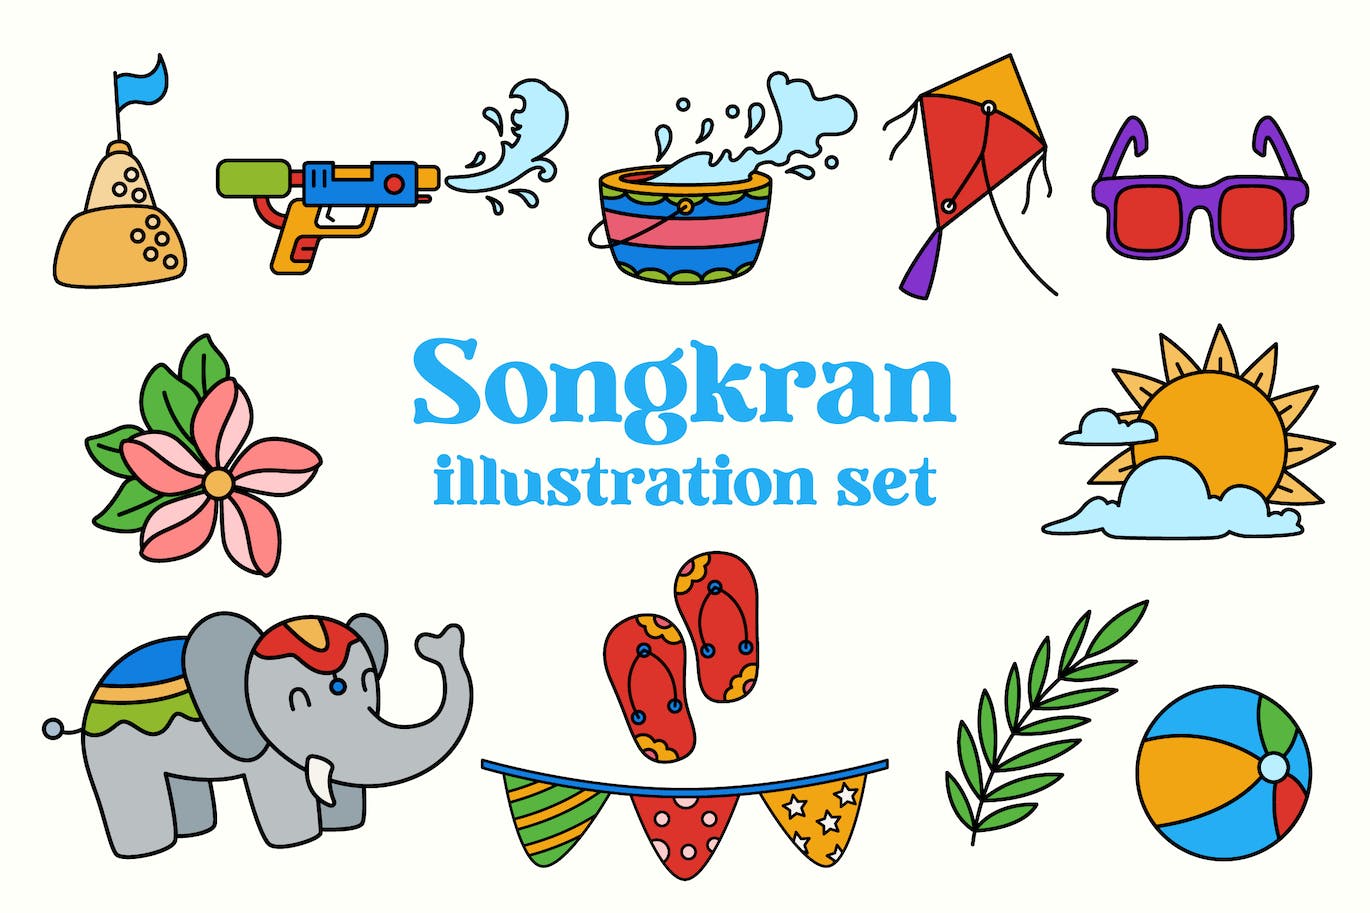 宋干节泼水节元素插画集 Songkran Illustration Set-1